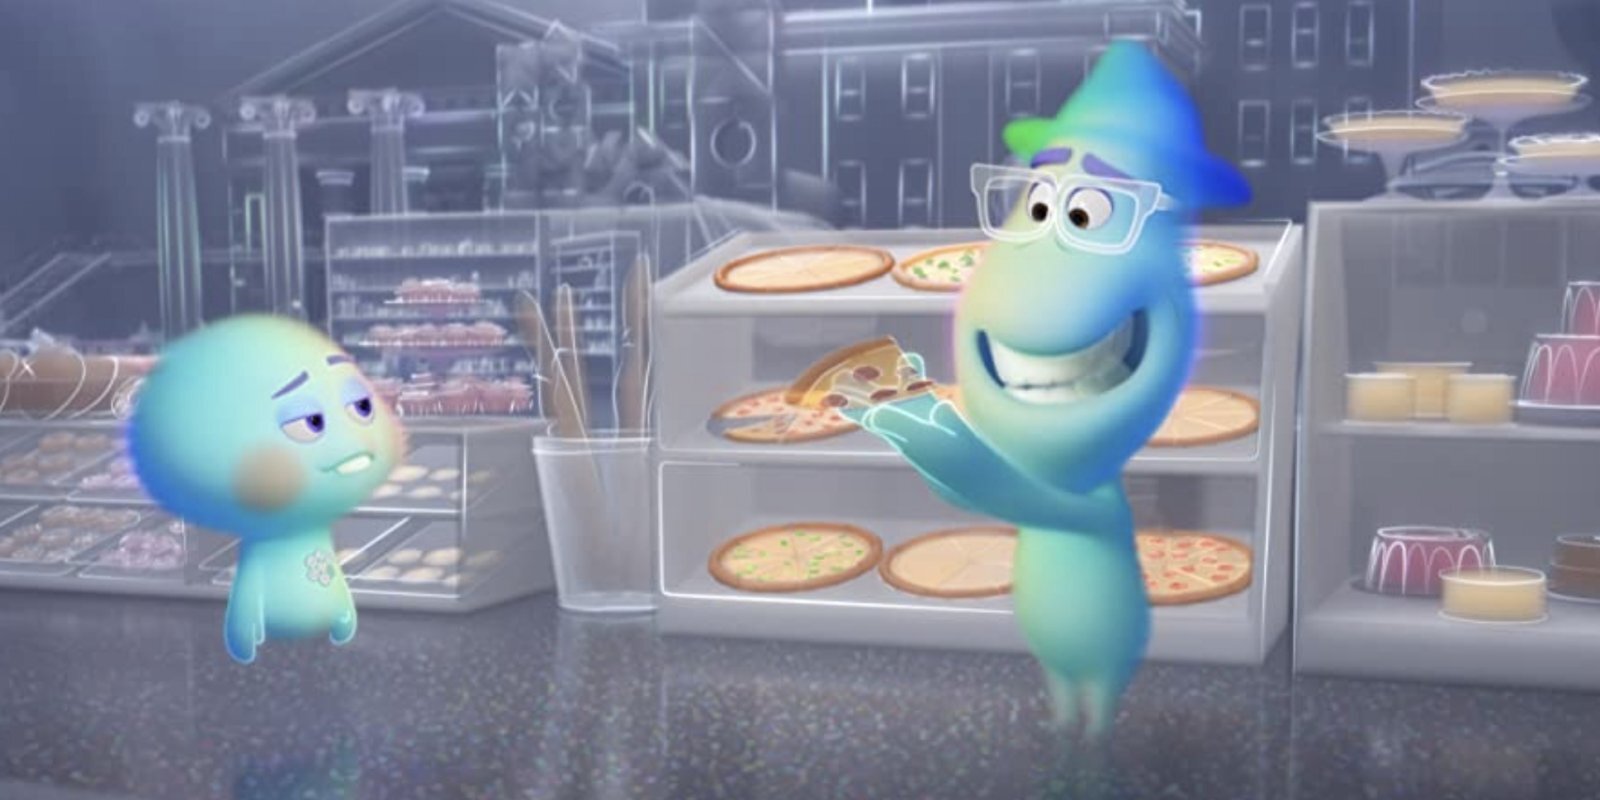 Eksistenciālisma ābece bērniem? 'Pixar' animācijas filmas 'Dvēsele' apskats